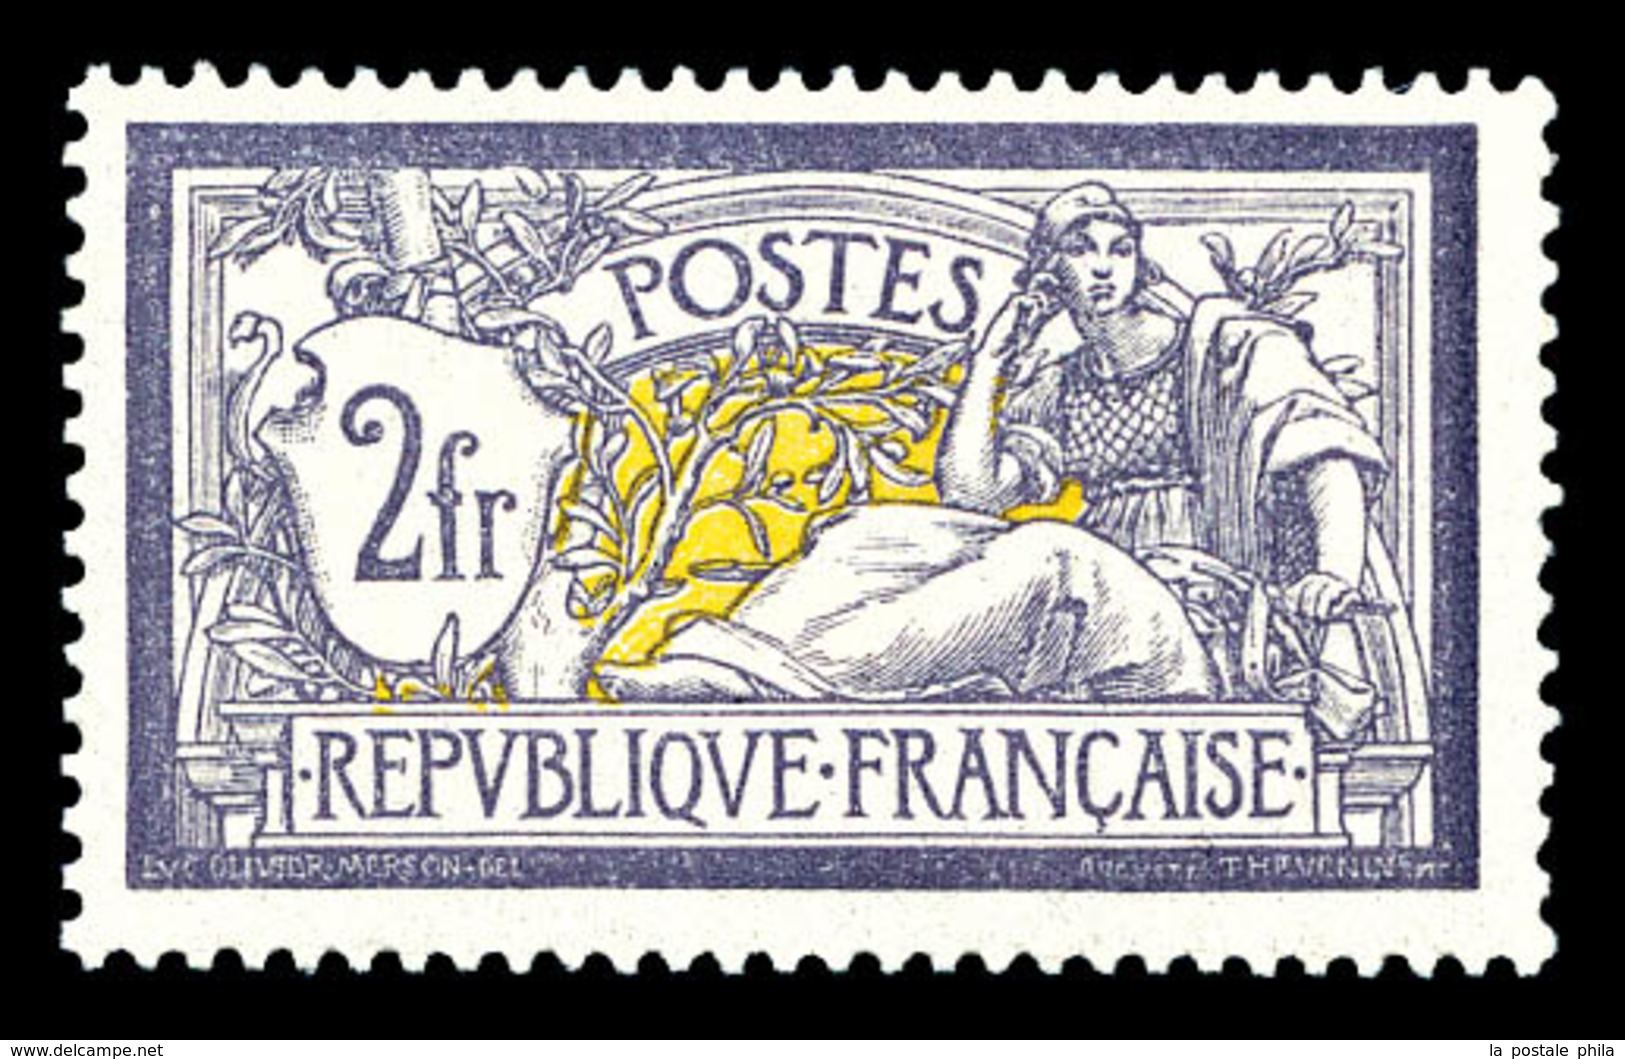 ** N°122, Merson, 2F Violet Et Jaune, Bon Centrage Et Fraîcheur Postale. SUP (certificat)  Qualité: **  Cote: 2500 Euros - 1900-02 Mouchon